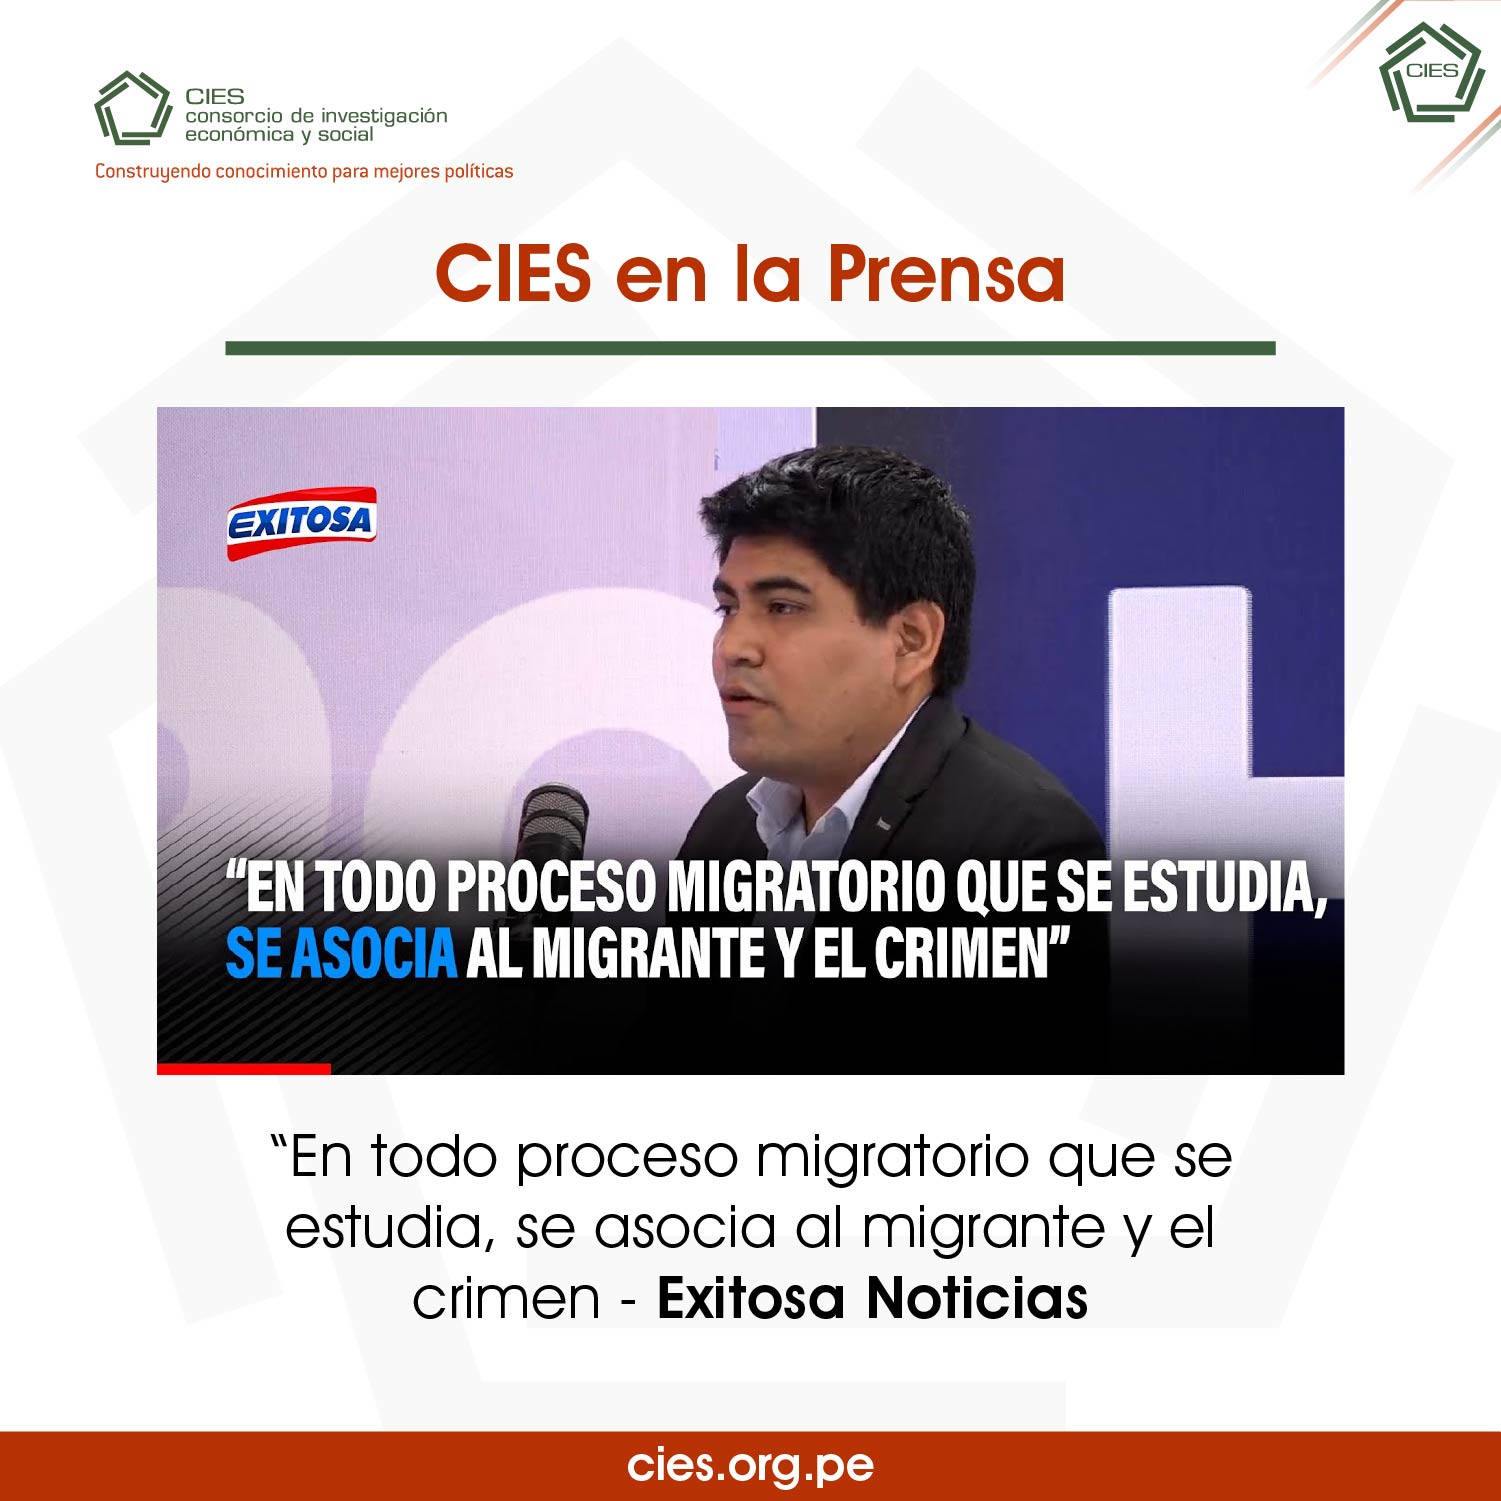 IEP: En todo proceso migratorio que se estudia, se asocia al migrante y el crimen – CIES en la Prensa